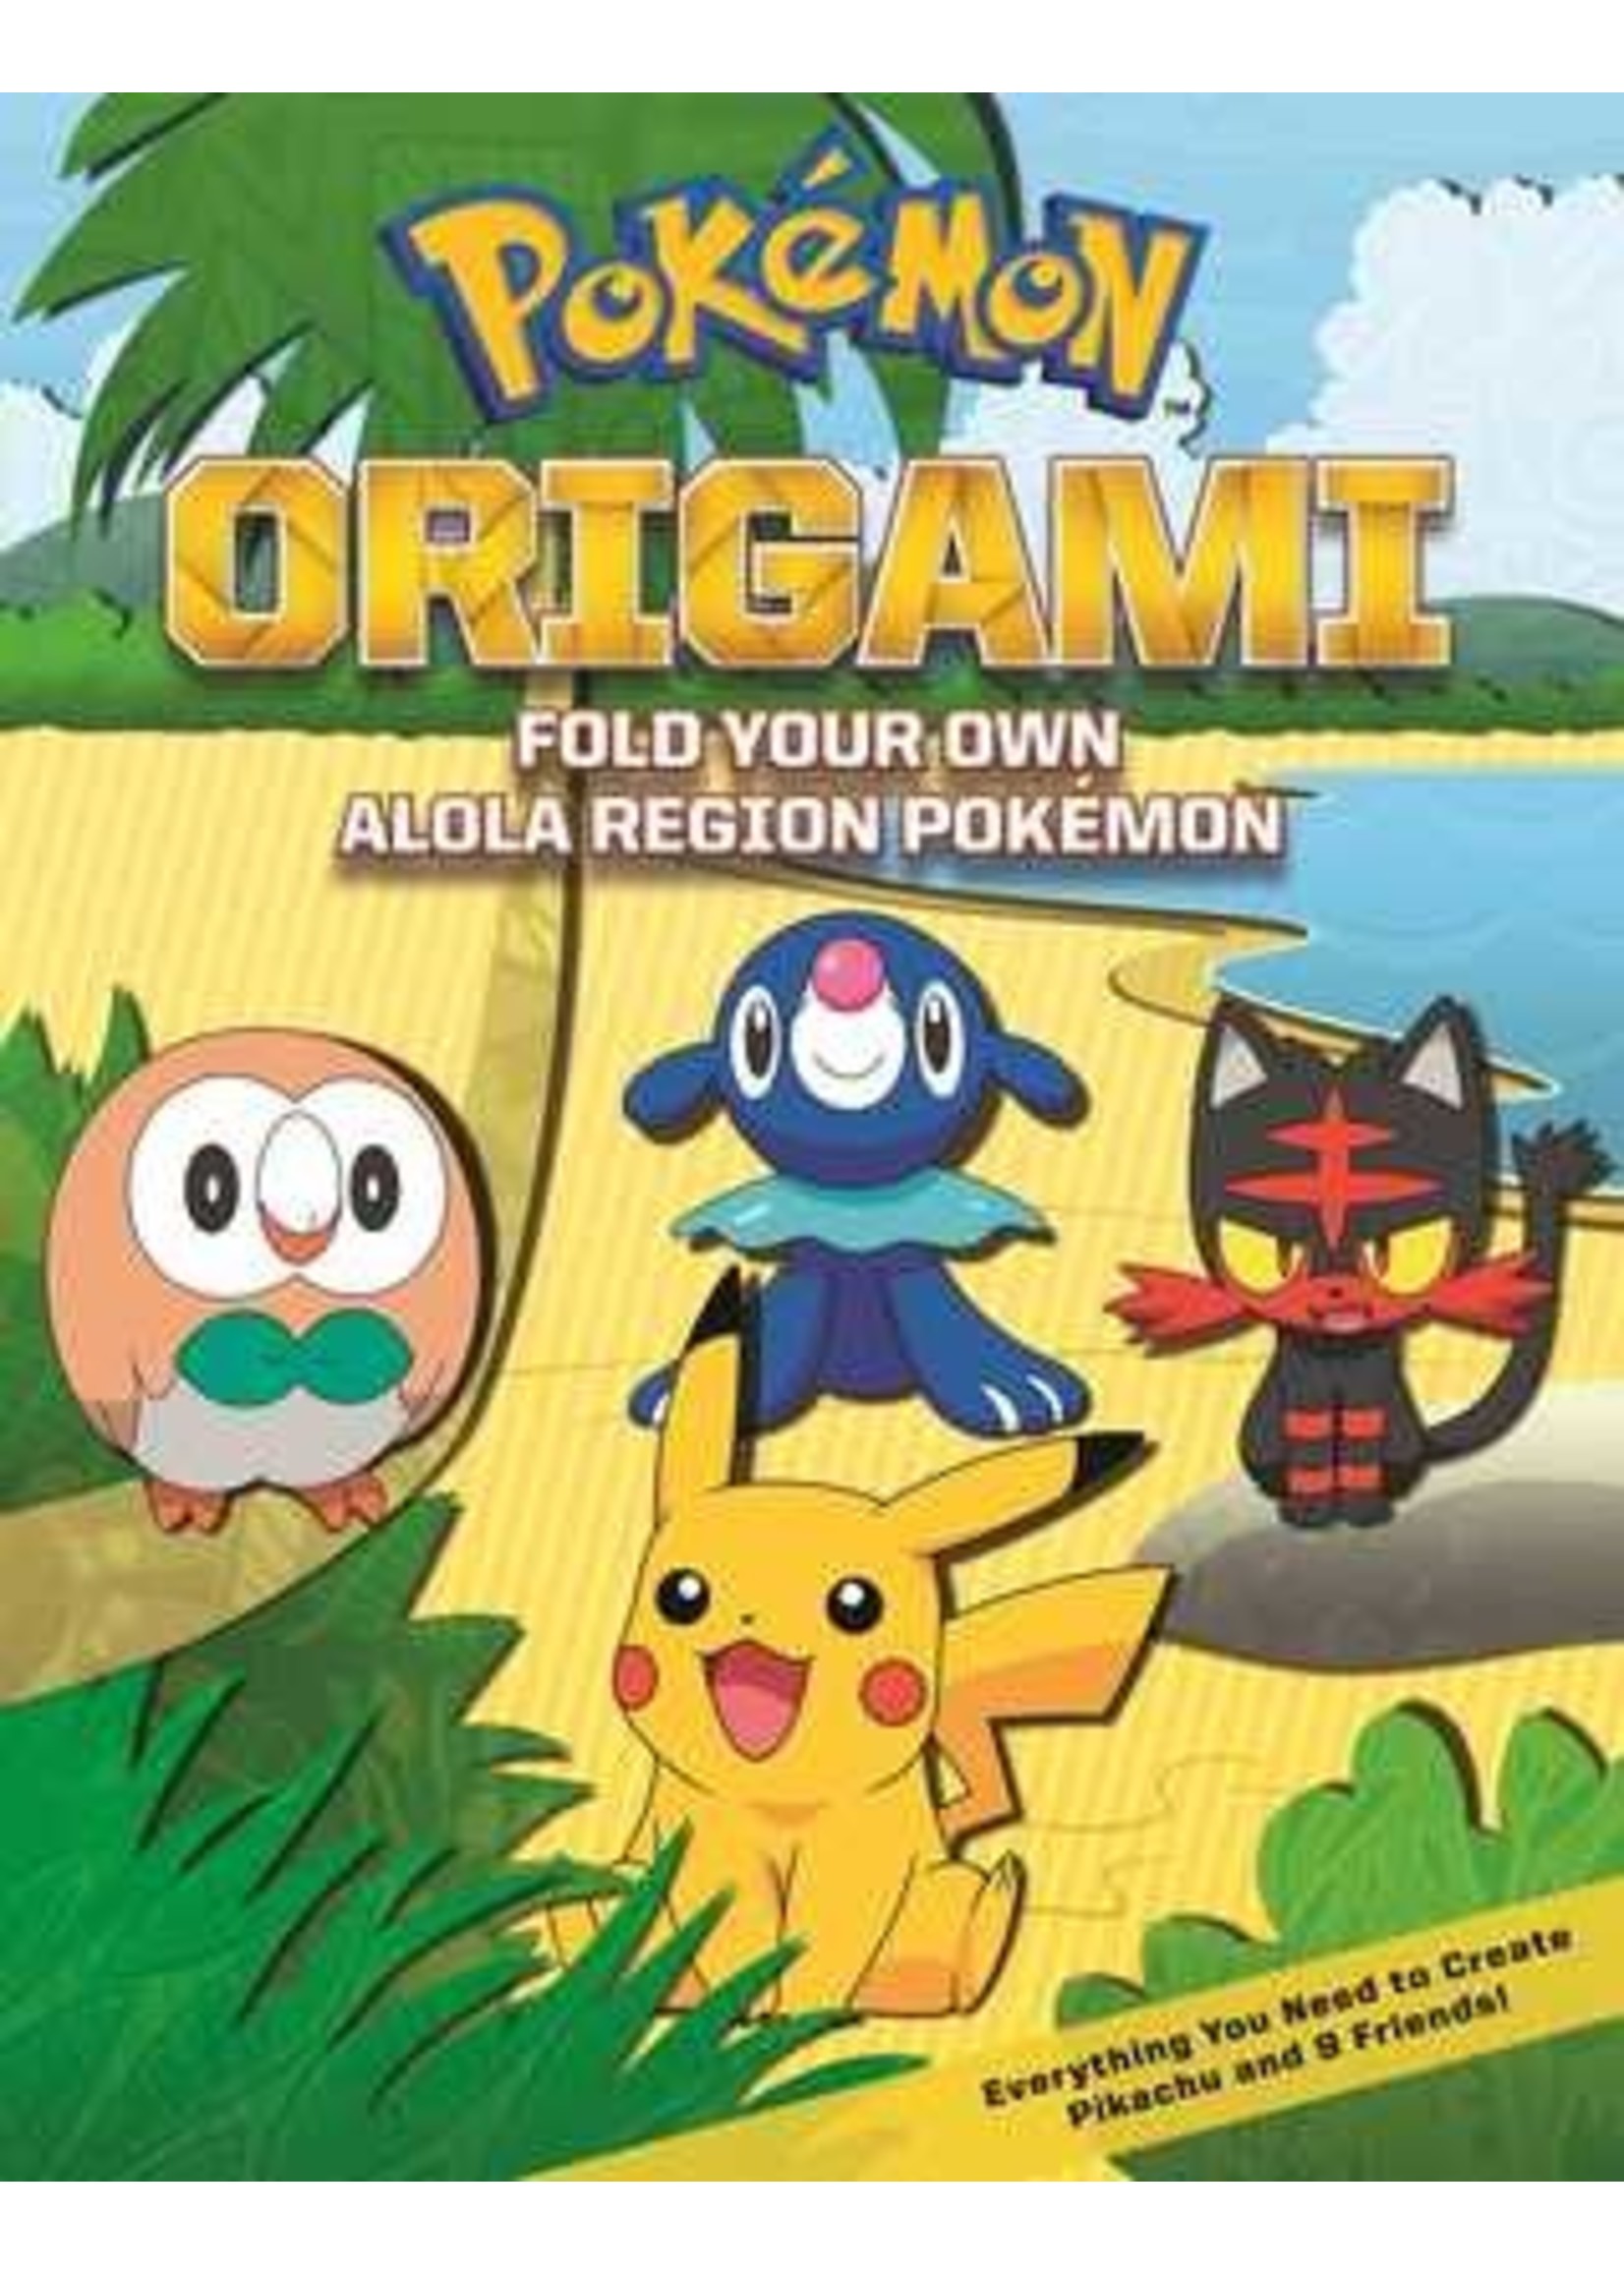 Pokémon Origami: Fold Your Own Alola Region Pokémon by The Pokémon Company International